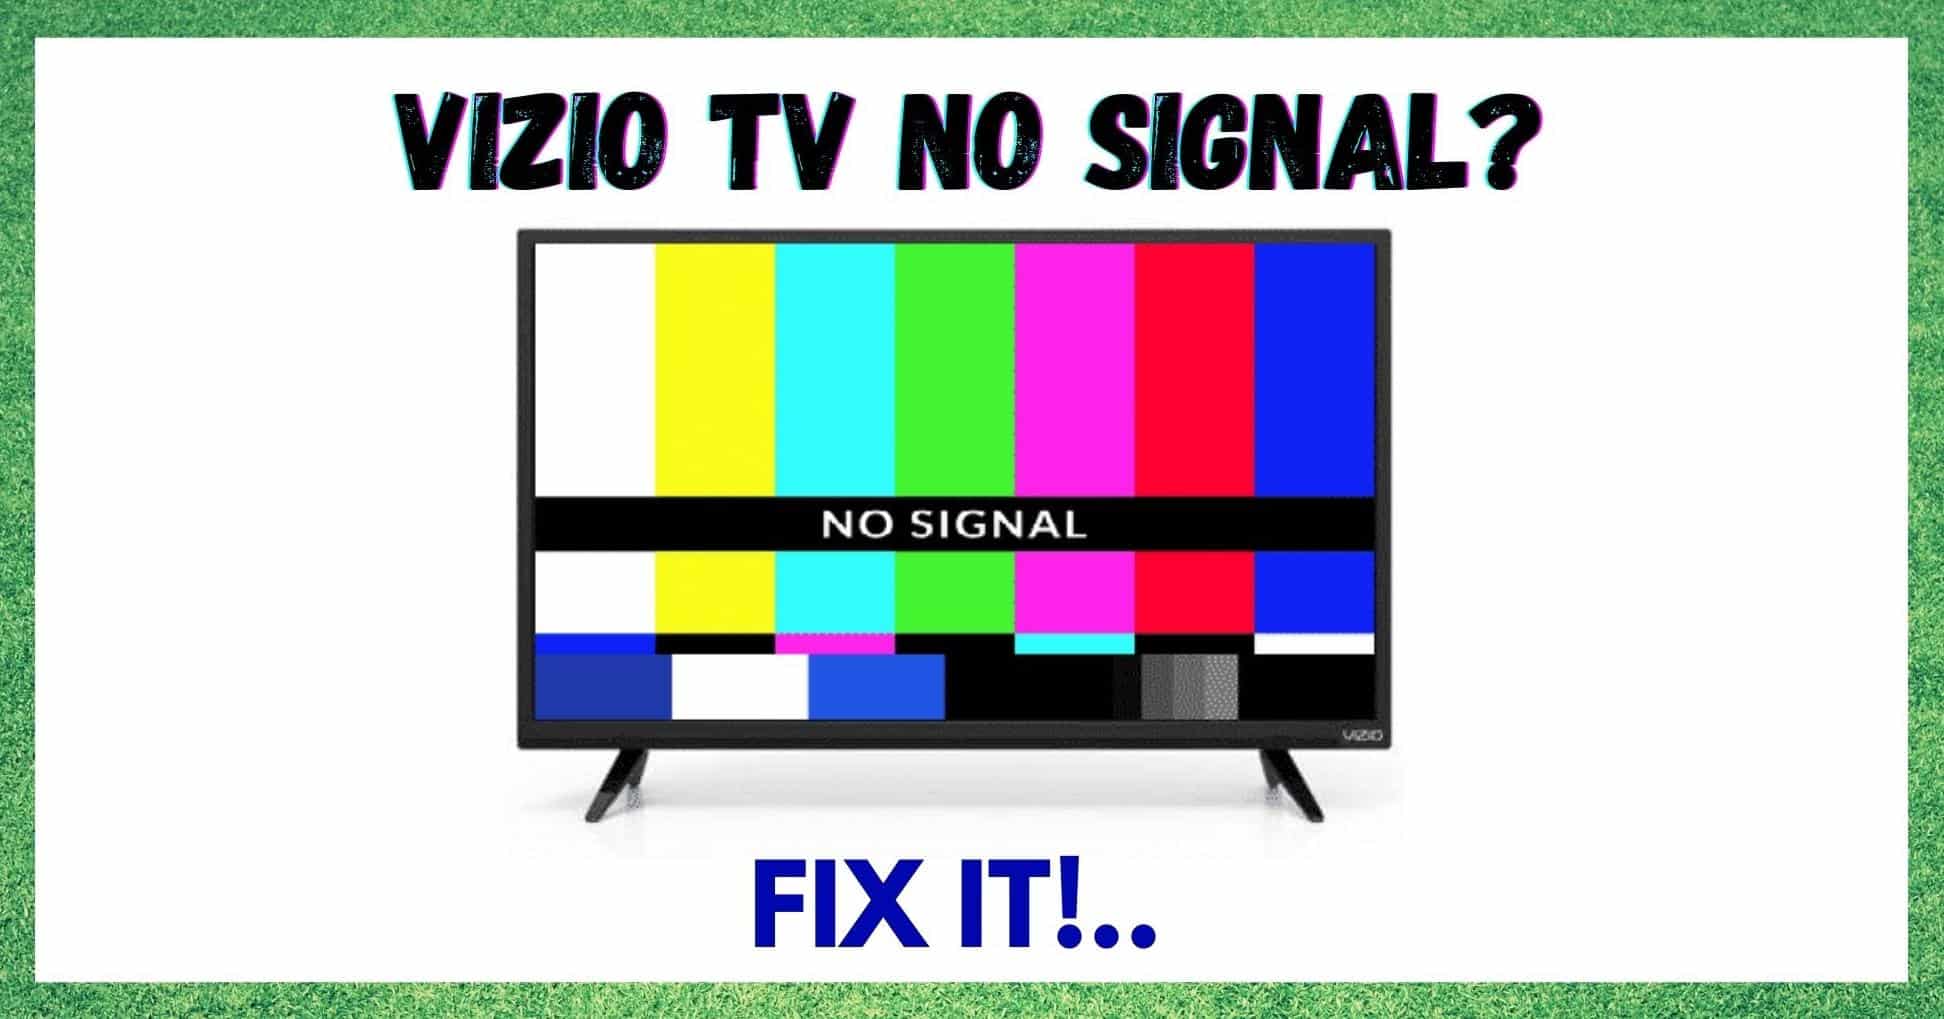 Vizio TV No Signal Issue সমাধান কৰাৰ ৩টা উপায়